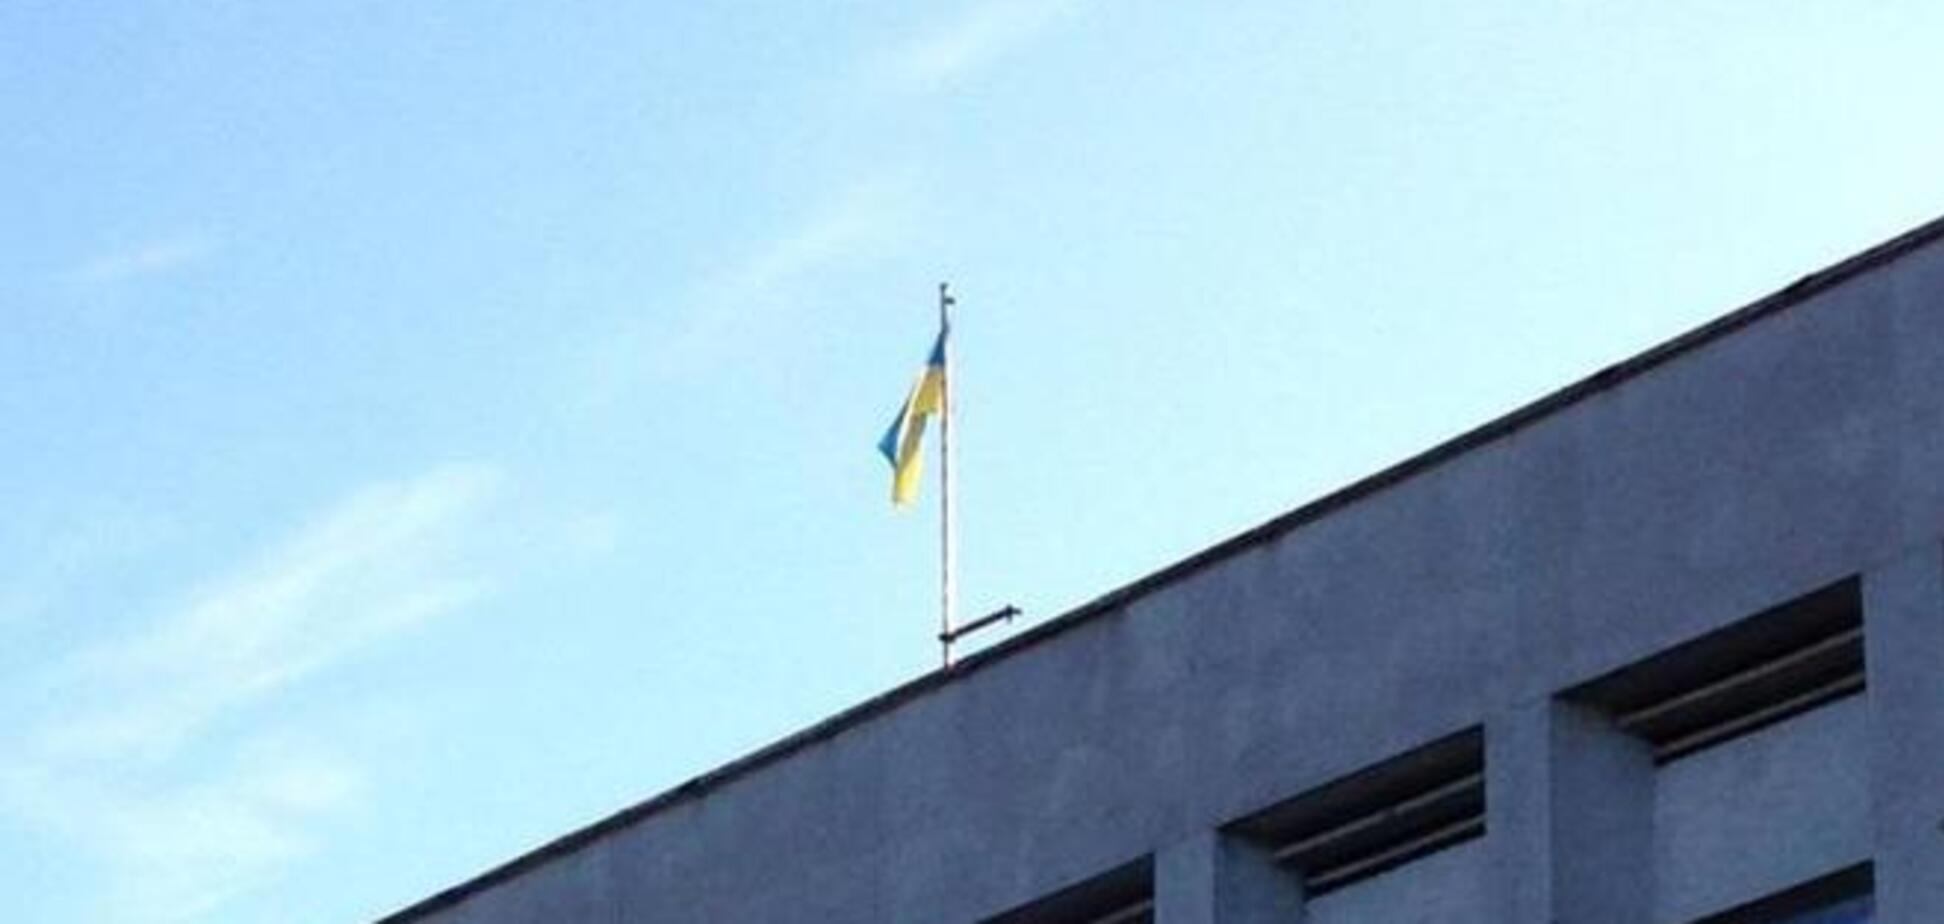 Над Рубежным поднят флаг Украины